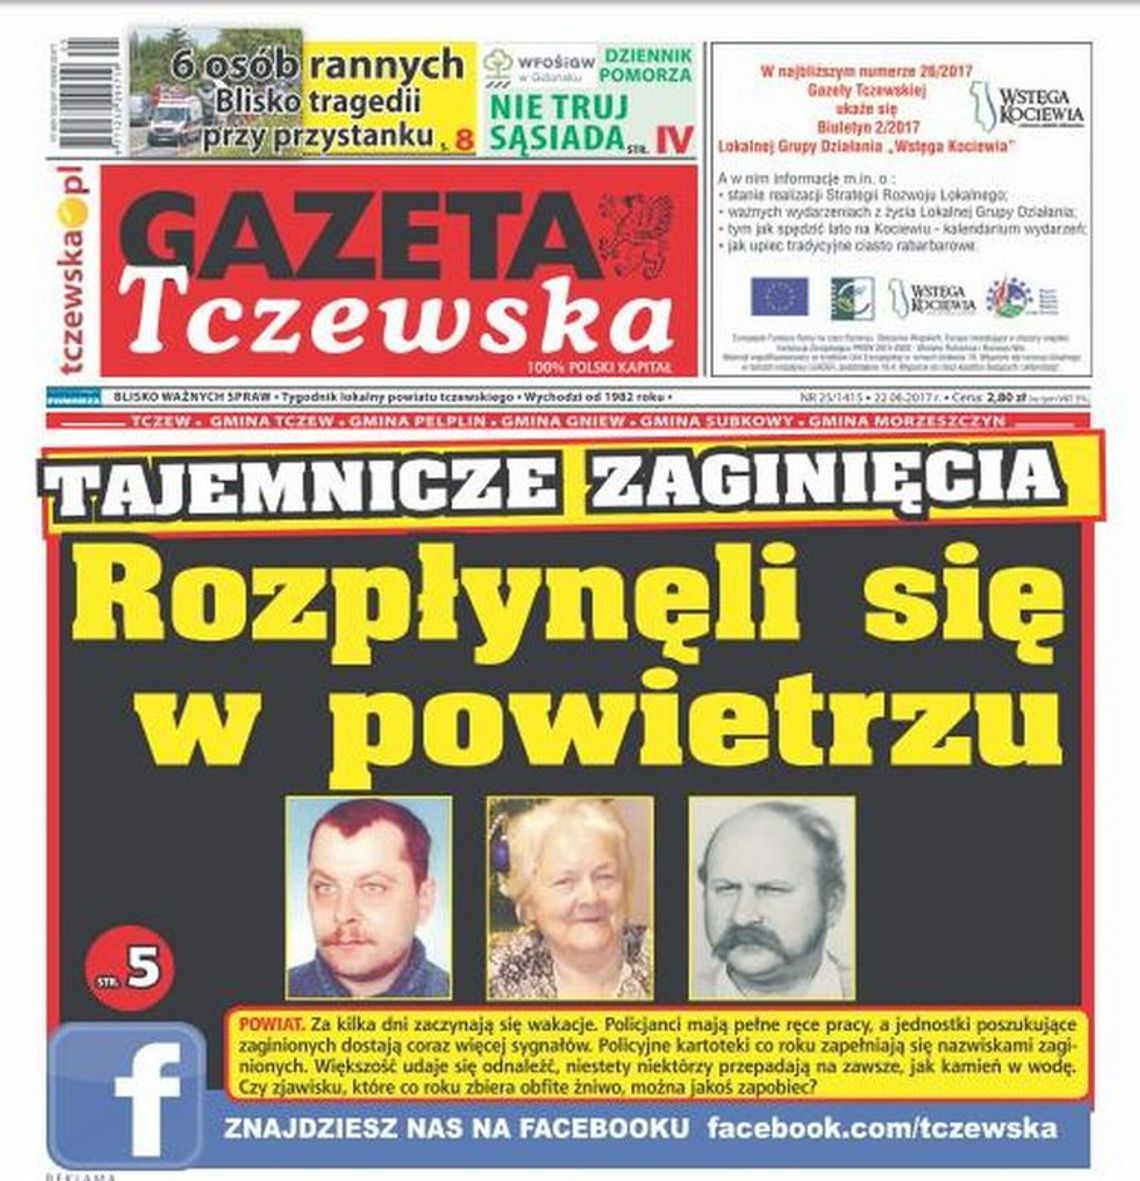 Czytaj najnowszy numer Gazety Tczewskiej + ROZKŁAD JAZDY GRATIS!